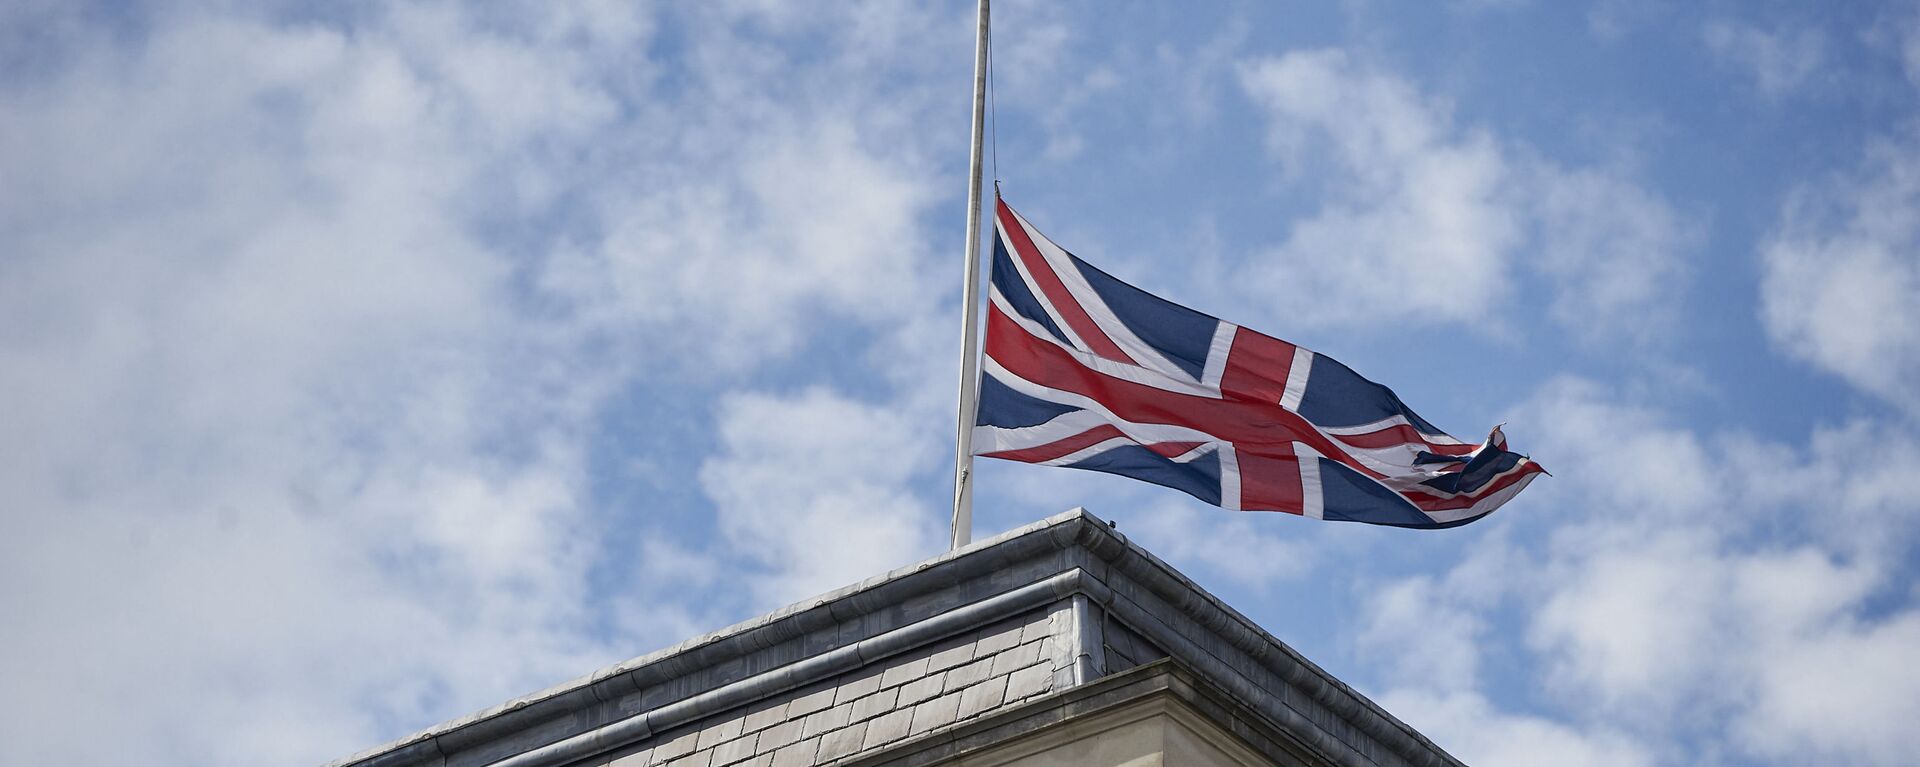 Quốc kỳ Anh trên tòa nhà Bộ Ngoại giao Anh ở London. - Sputnik Việt Nam, 1920, 01.04.2021